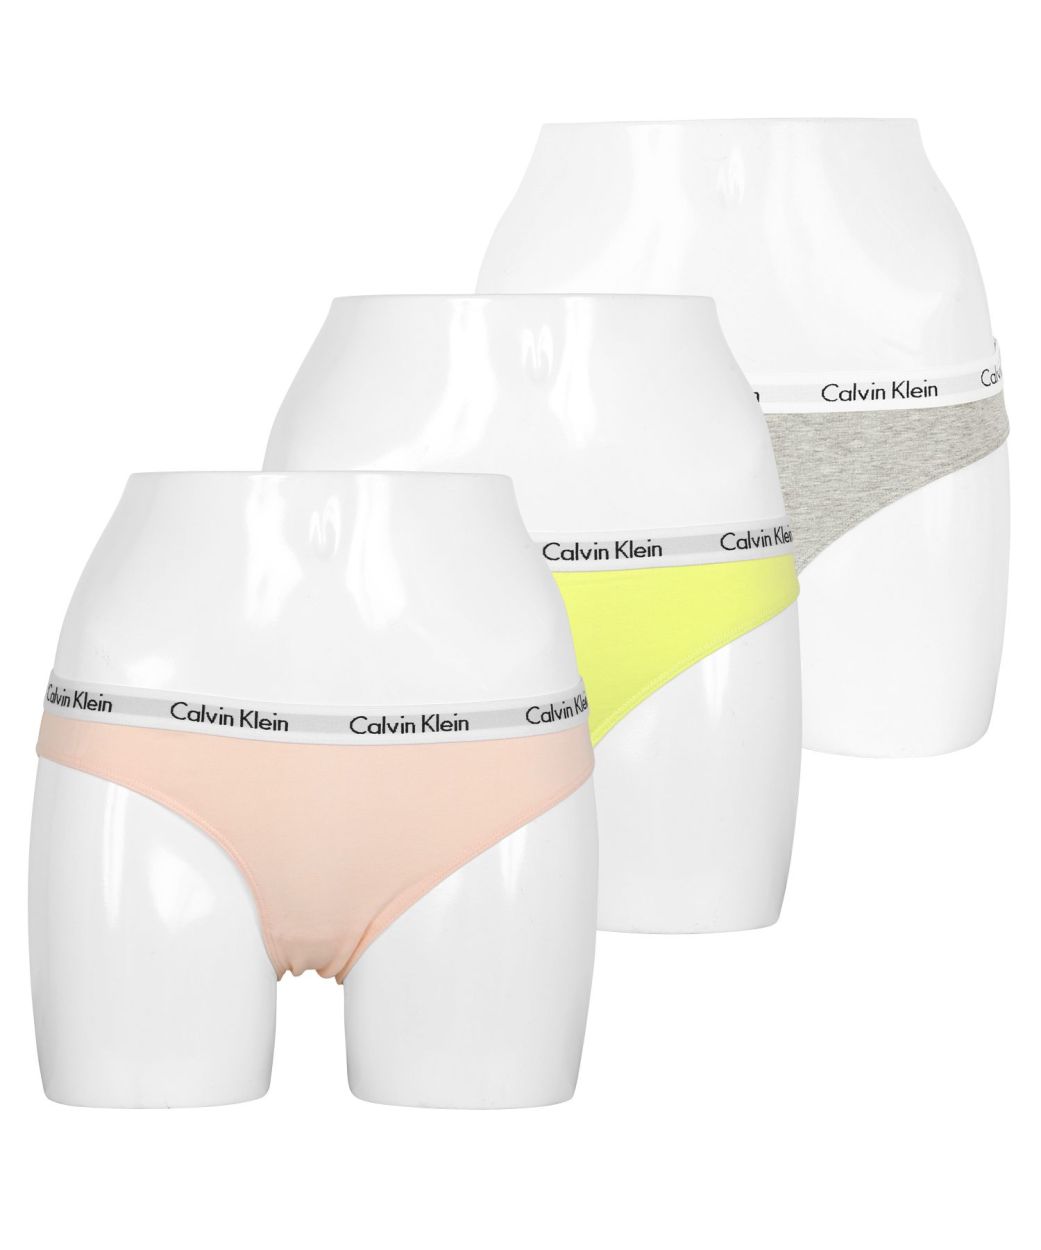 カルバンクライン Calvin Klein 3枚セット ショーツ レディース 婦人 女性 下着 パンツ 綿 かわいい おしゃれ 無地 ロゴ ブランド